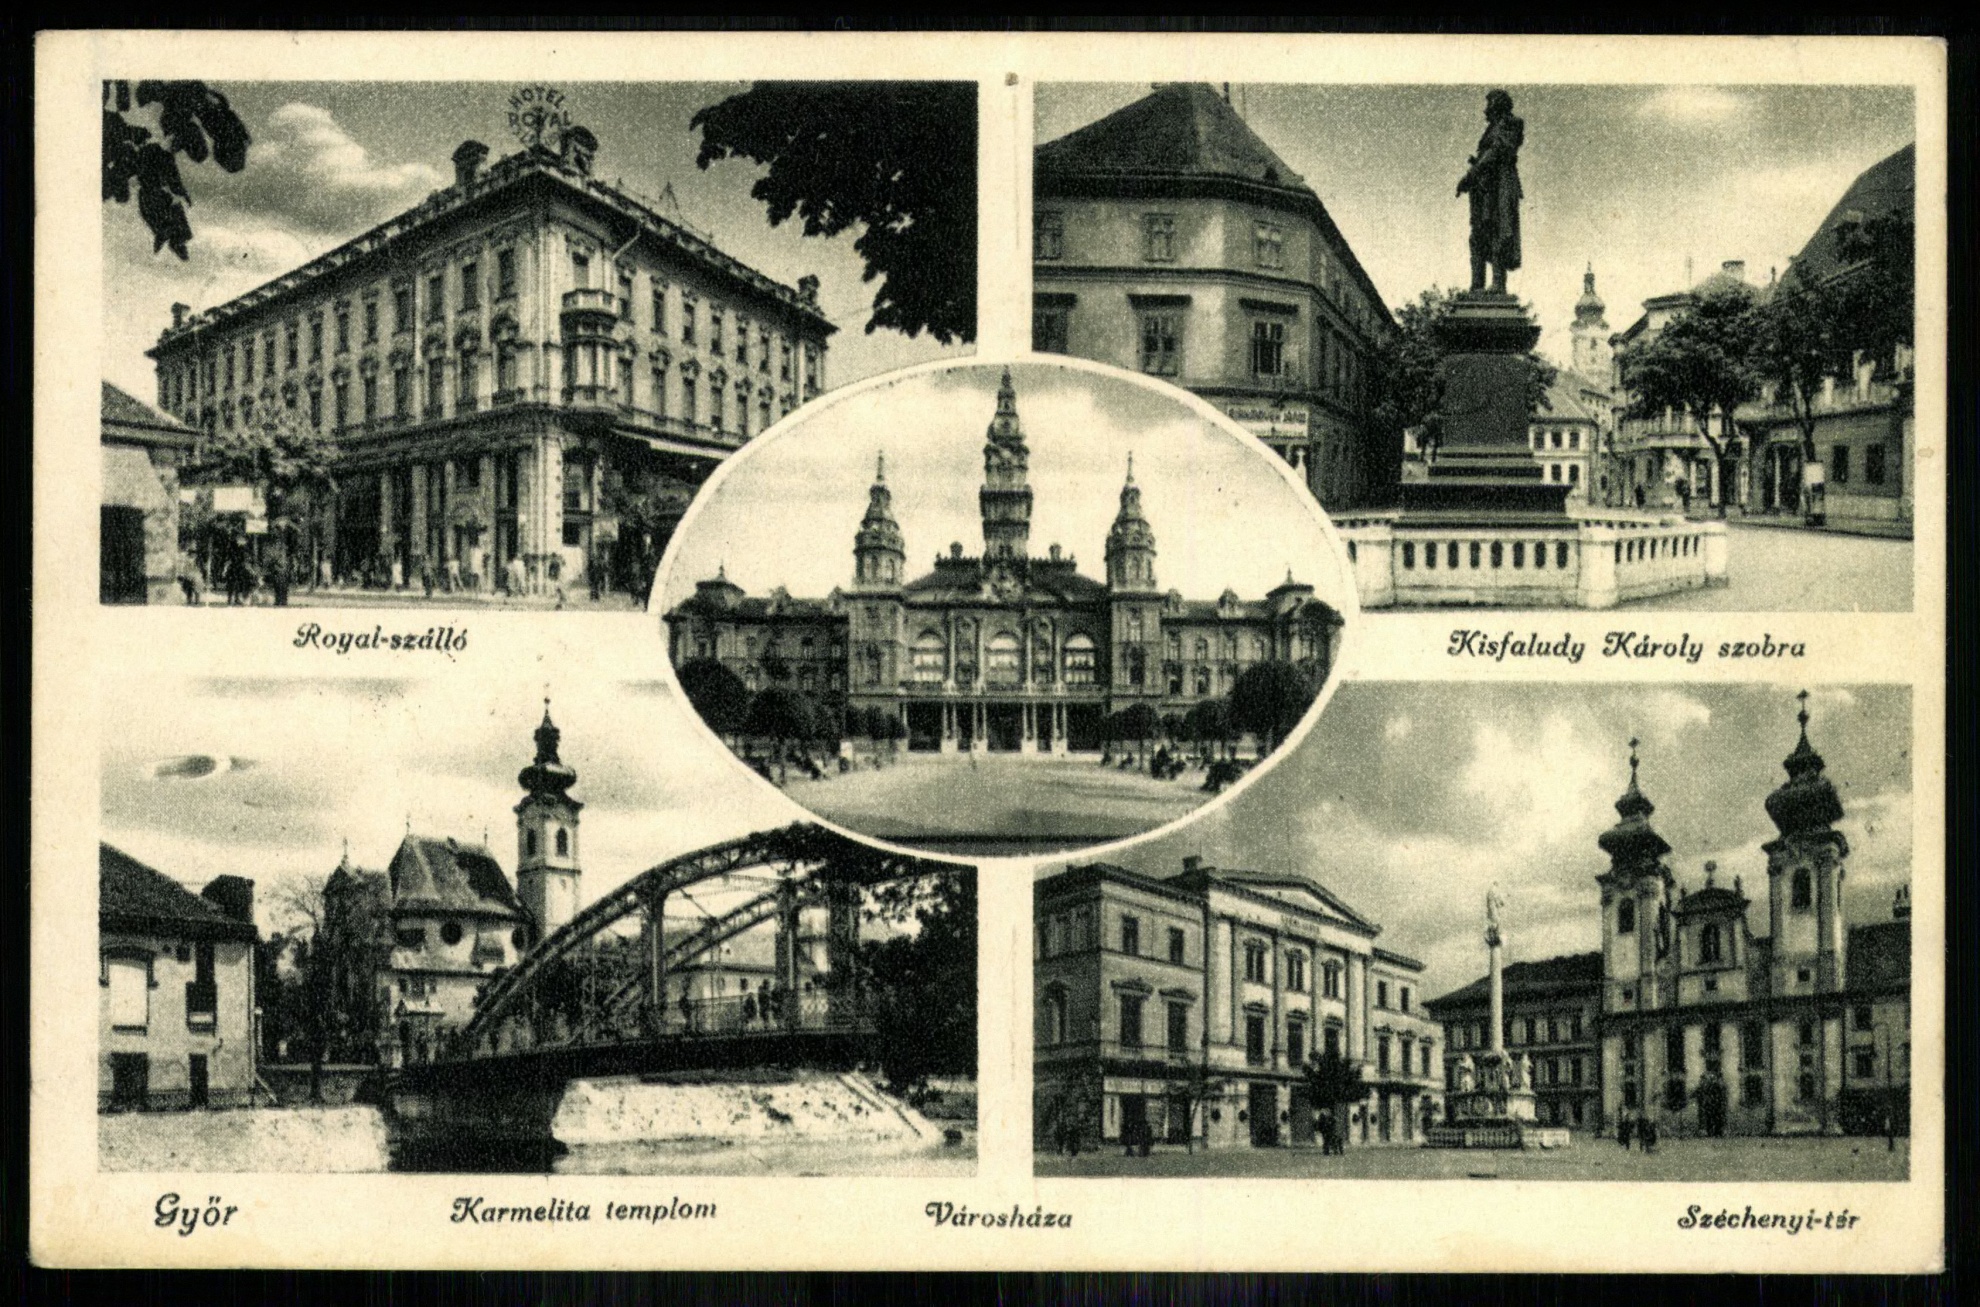 Győr Royal szálló, Kisfaludy Károly szobra, Karmelita templom, Széchenyi tér (Magyar Kereskedelmi és Vendéglátóipari Múzeum CC BY-NC-ND)